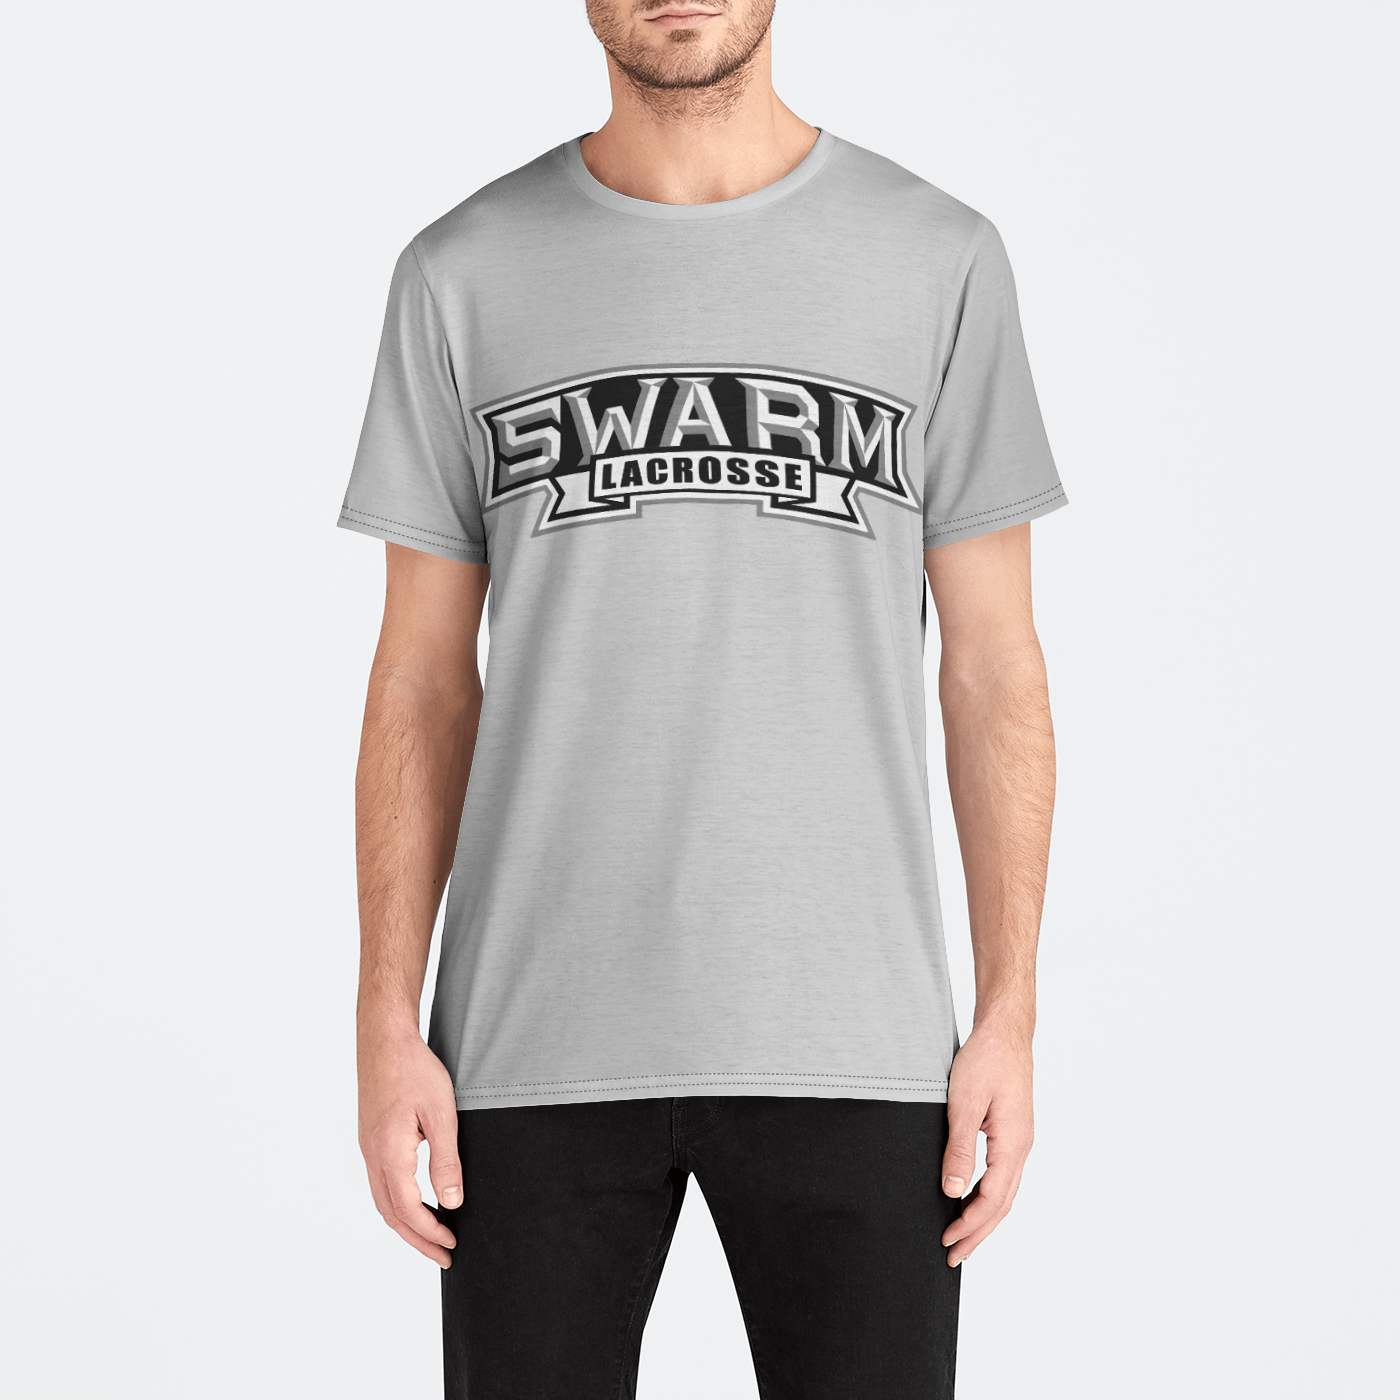 Swarm Lacrosse Adult Men's Sport T-Shirt Signature Lacrosse